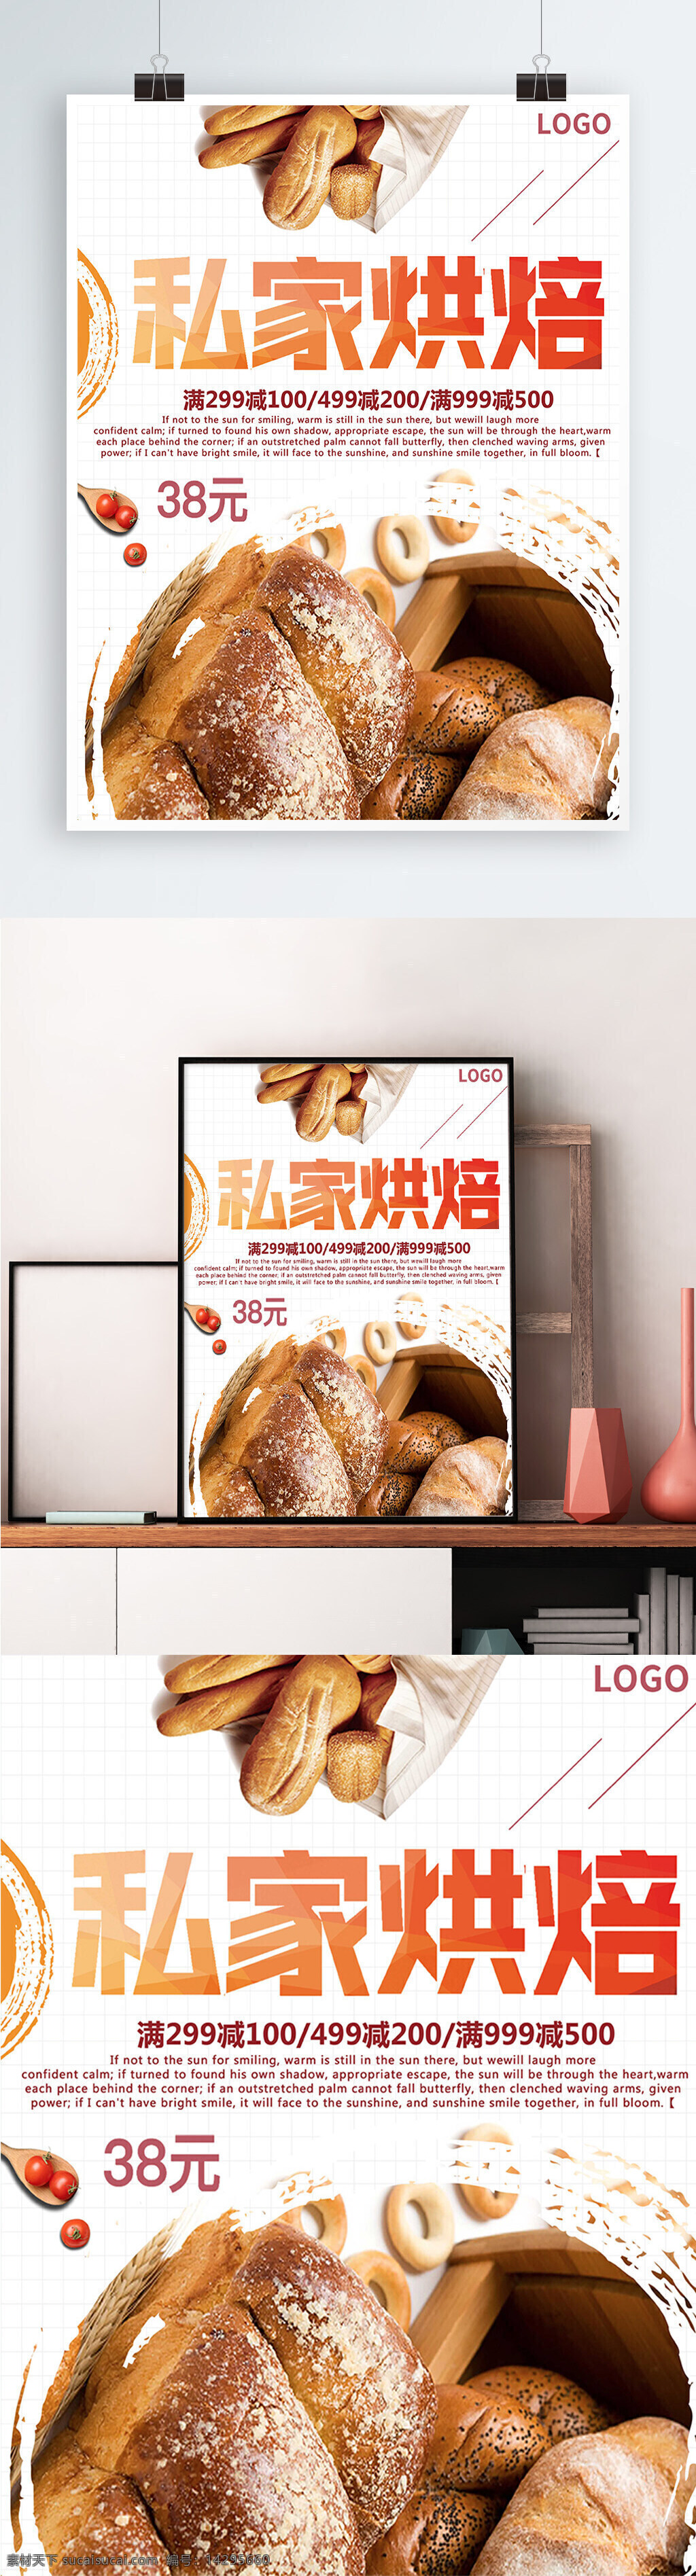 白色 背景 简约 大气 私家 烘 培 宣传海报 面包 烘培 商场 美食 促销 美味